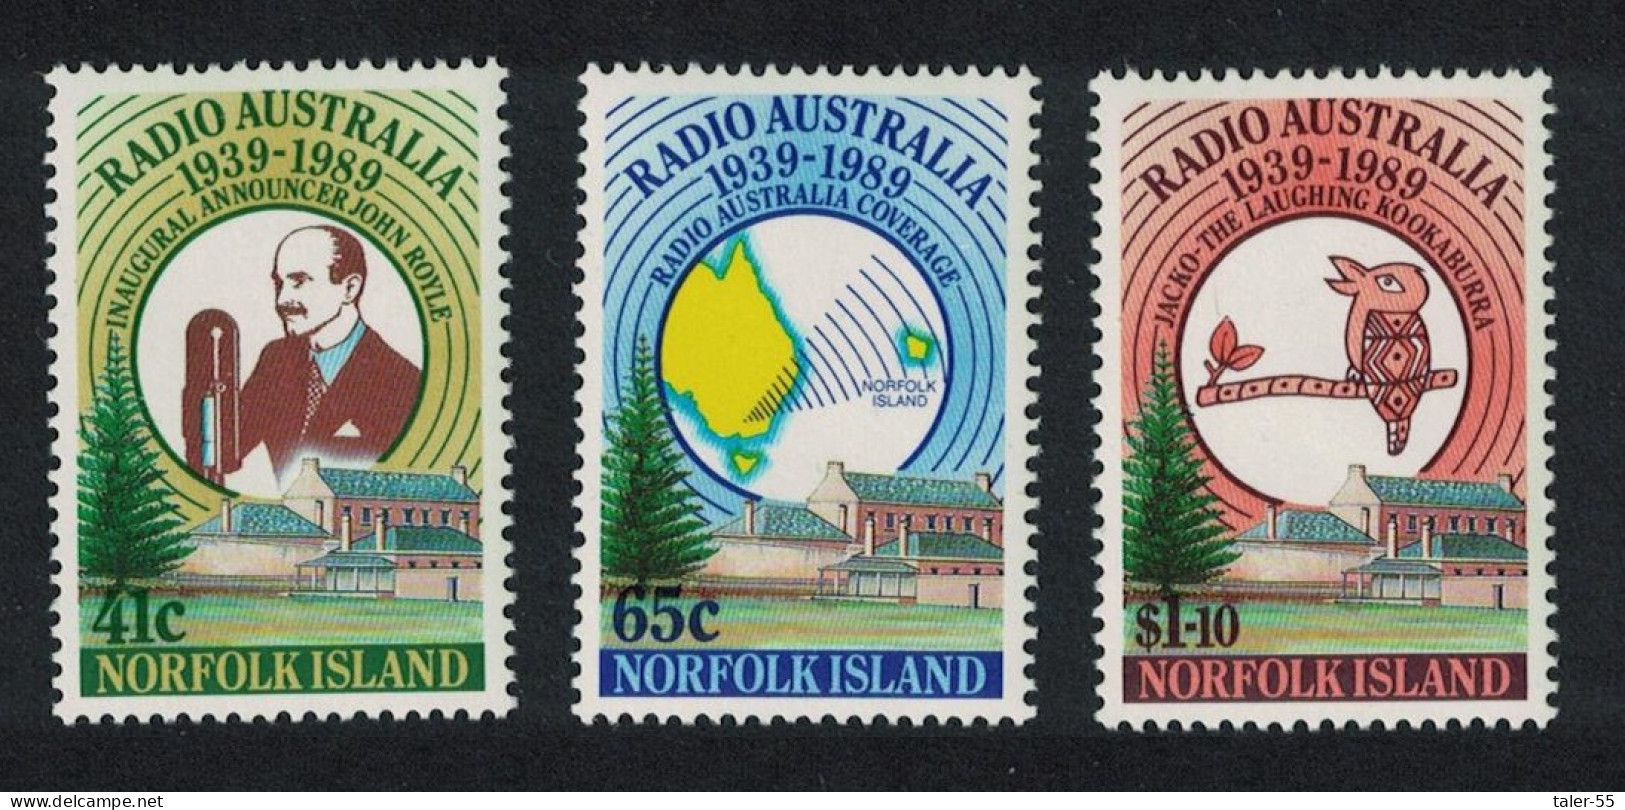 Norfolk Bird 50th Anniversary Of Radio Australia 3v 1989 MNH SG#474-476 Sc#466-468 - Norfolk Island